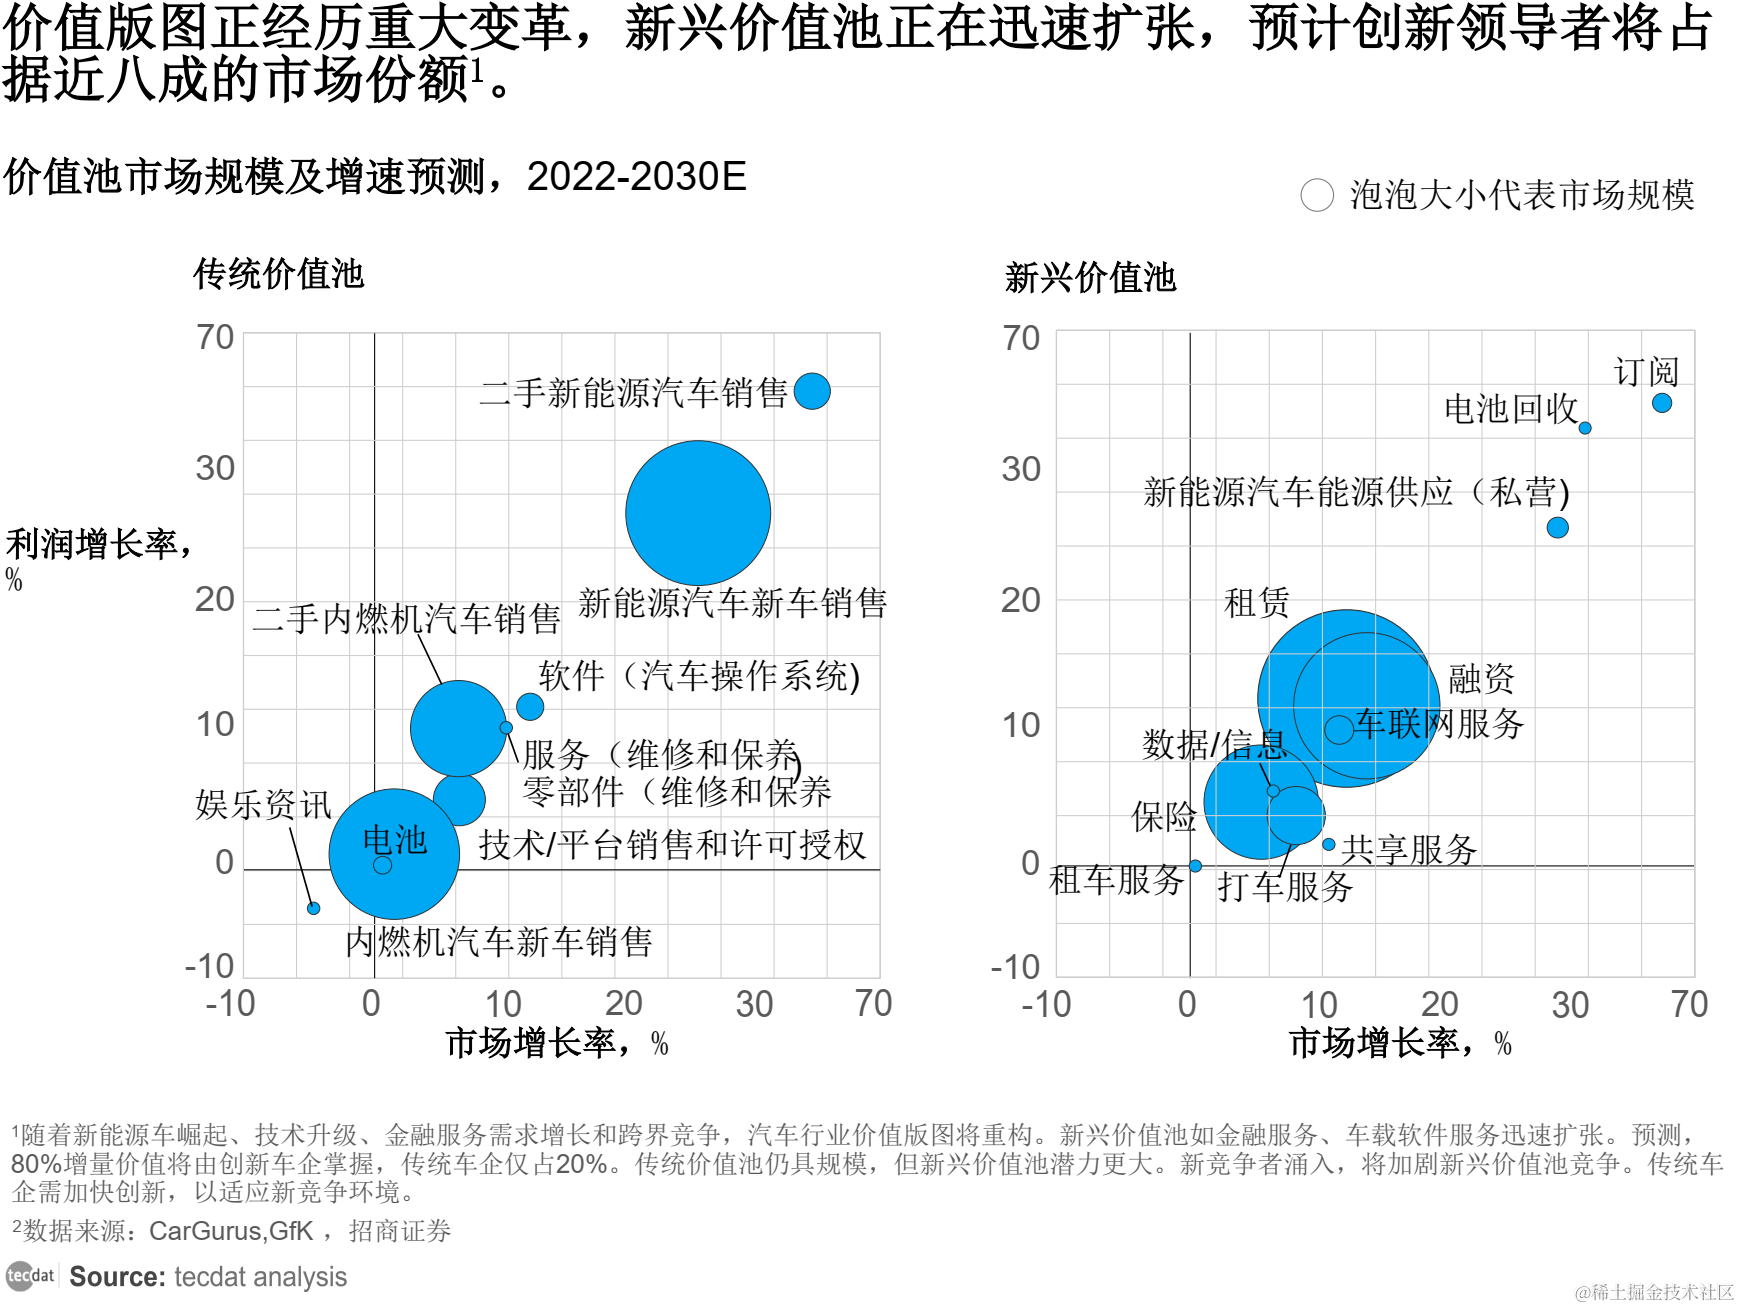 【专题】2030年中国汽车行业趋势展望报告pdf合集分享(附原数据表)